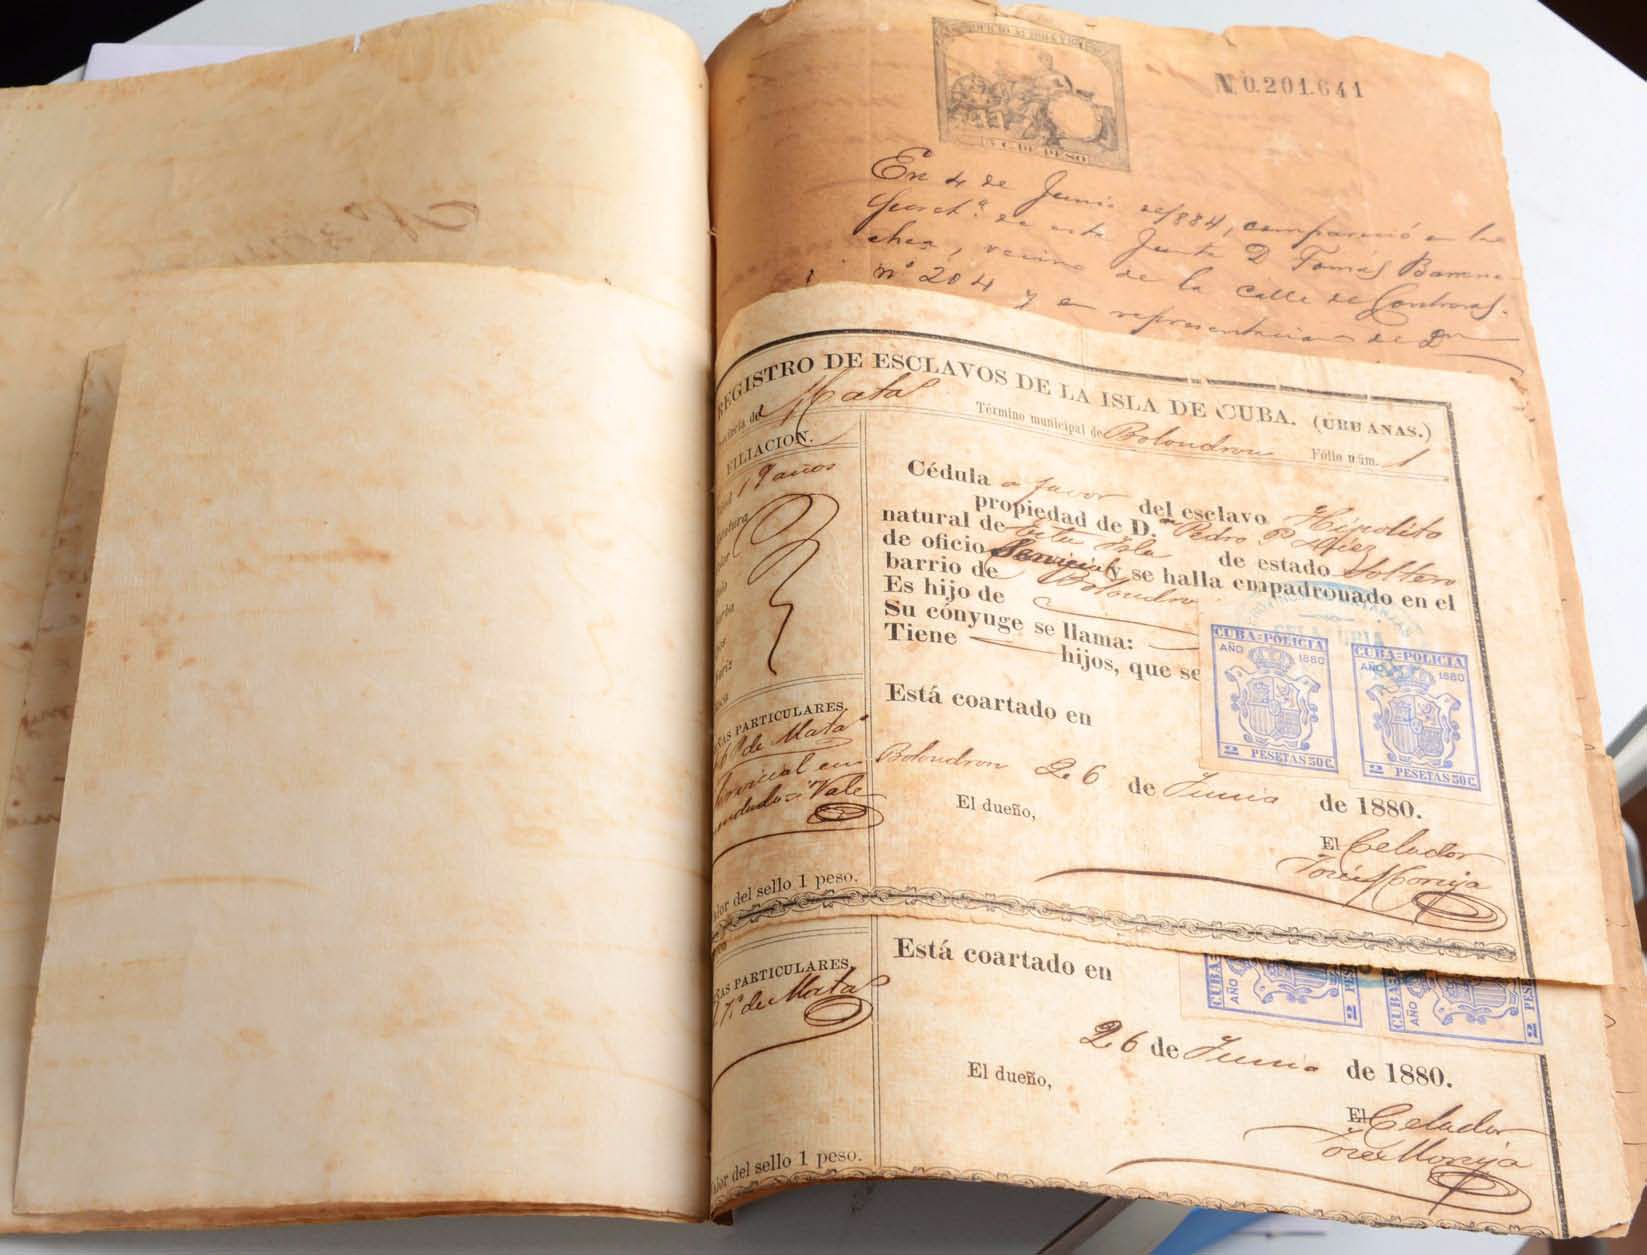 Registre d'esclaus de l'illa de Cuba, un dels documents de l’exposició 'Cuba, de colònia a nova república'